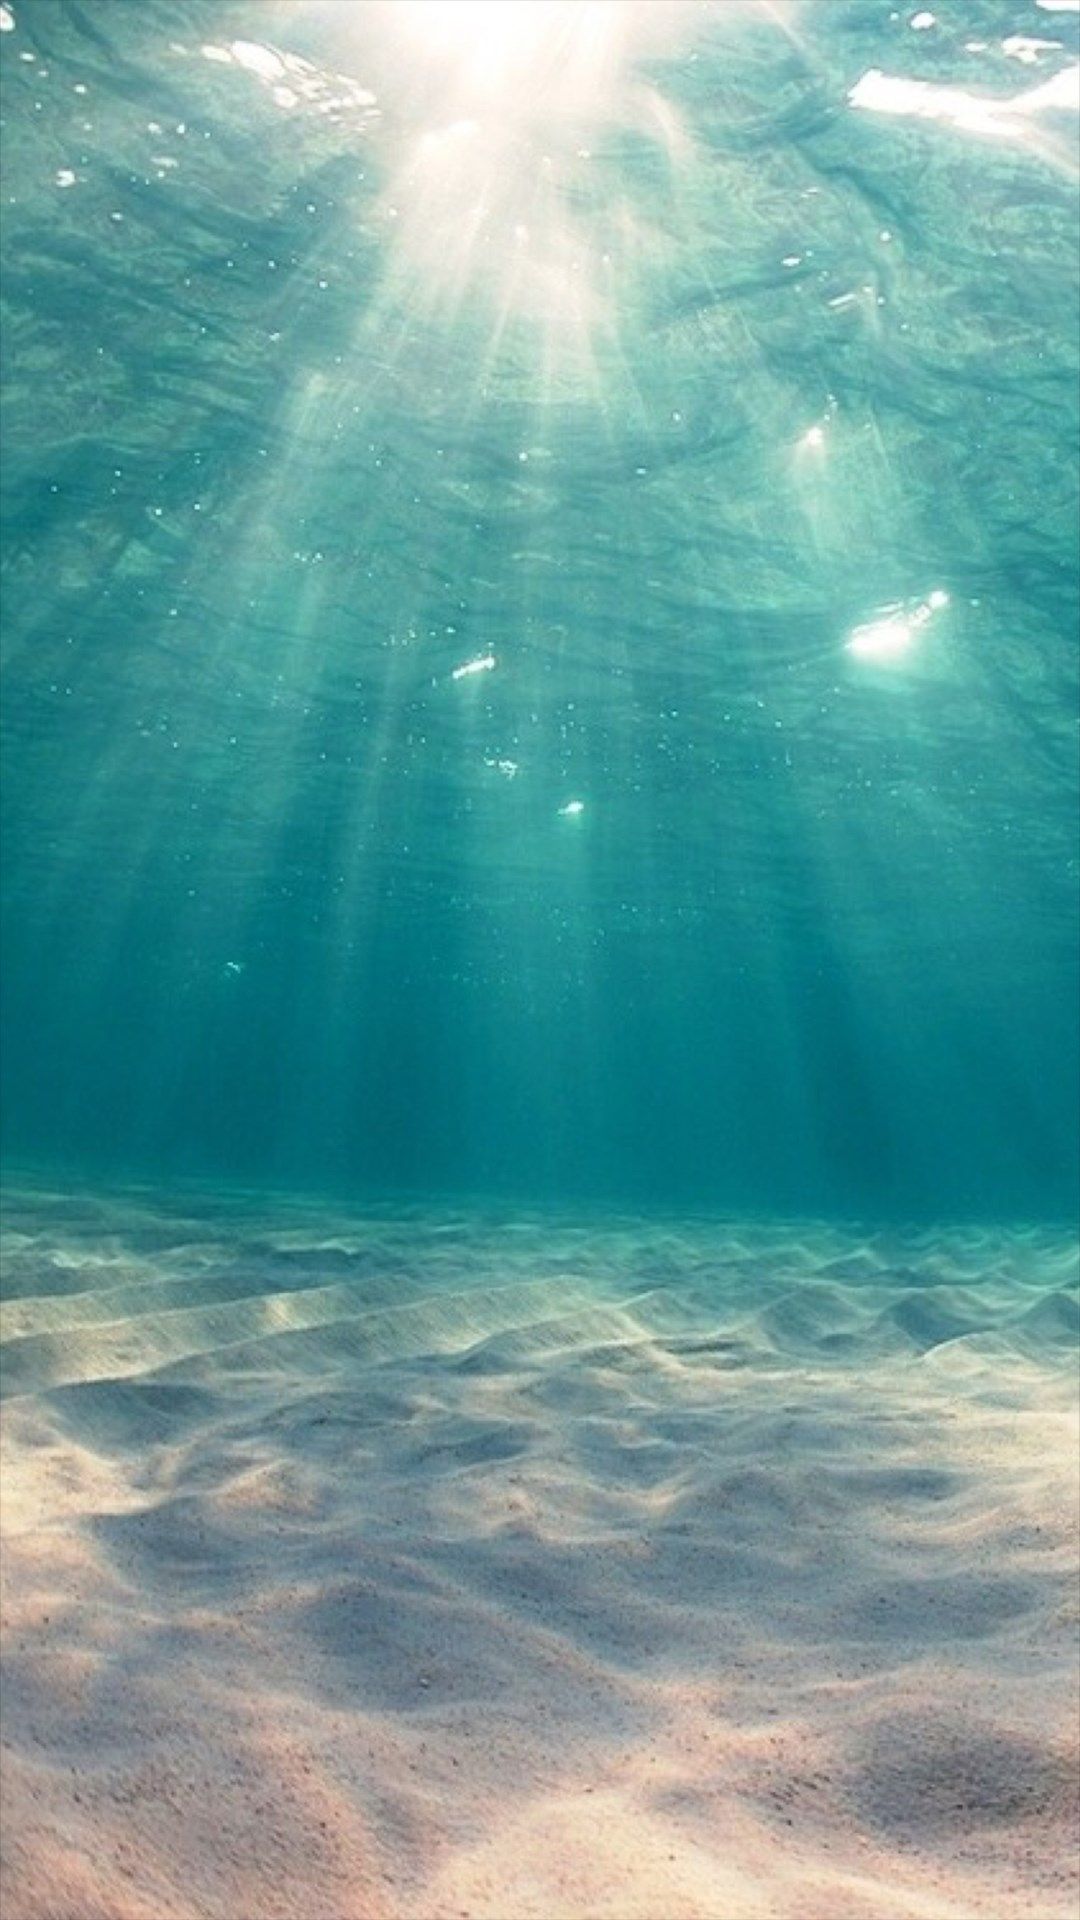 Sunshine Undersea Ocean View Deep iPhone 8 Wallpaper Free Download